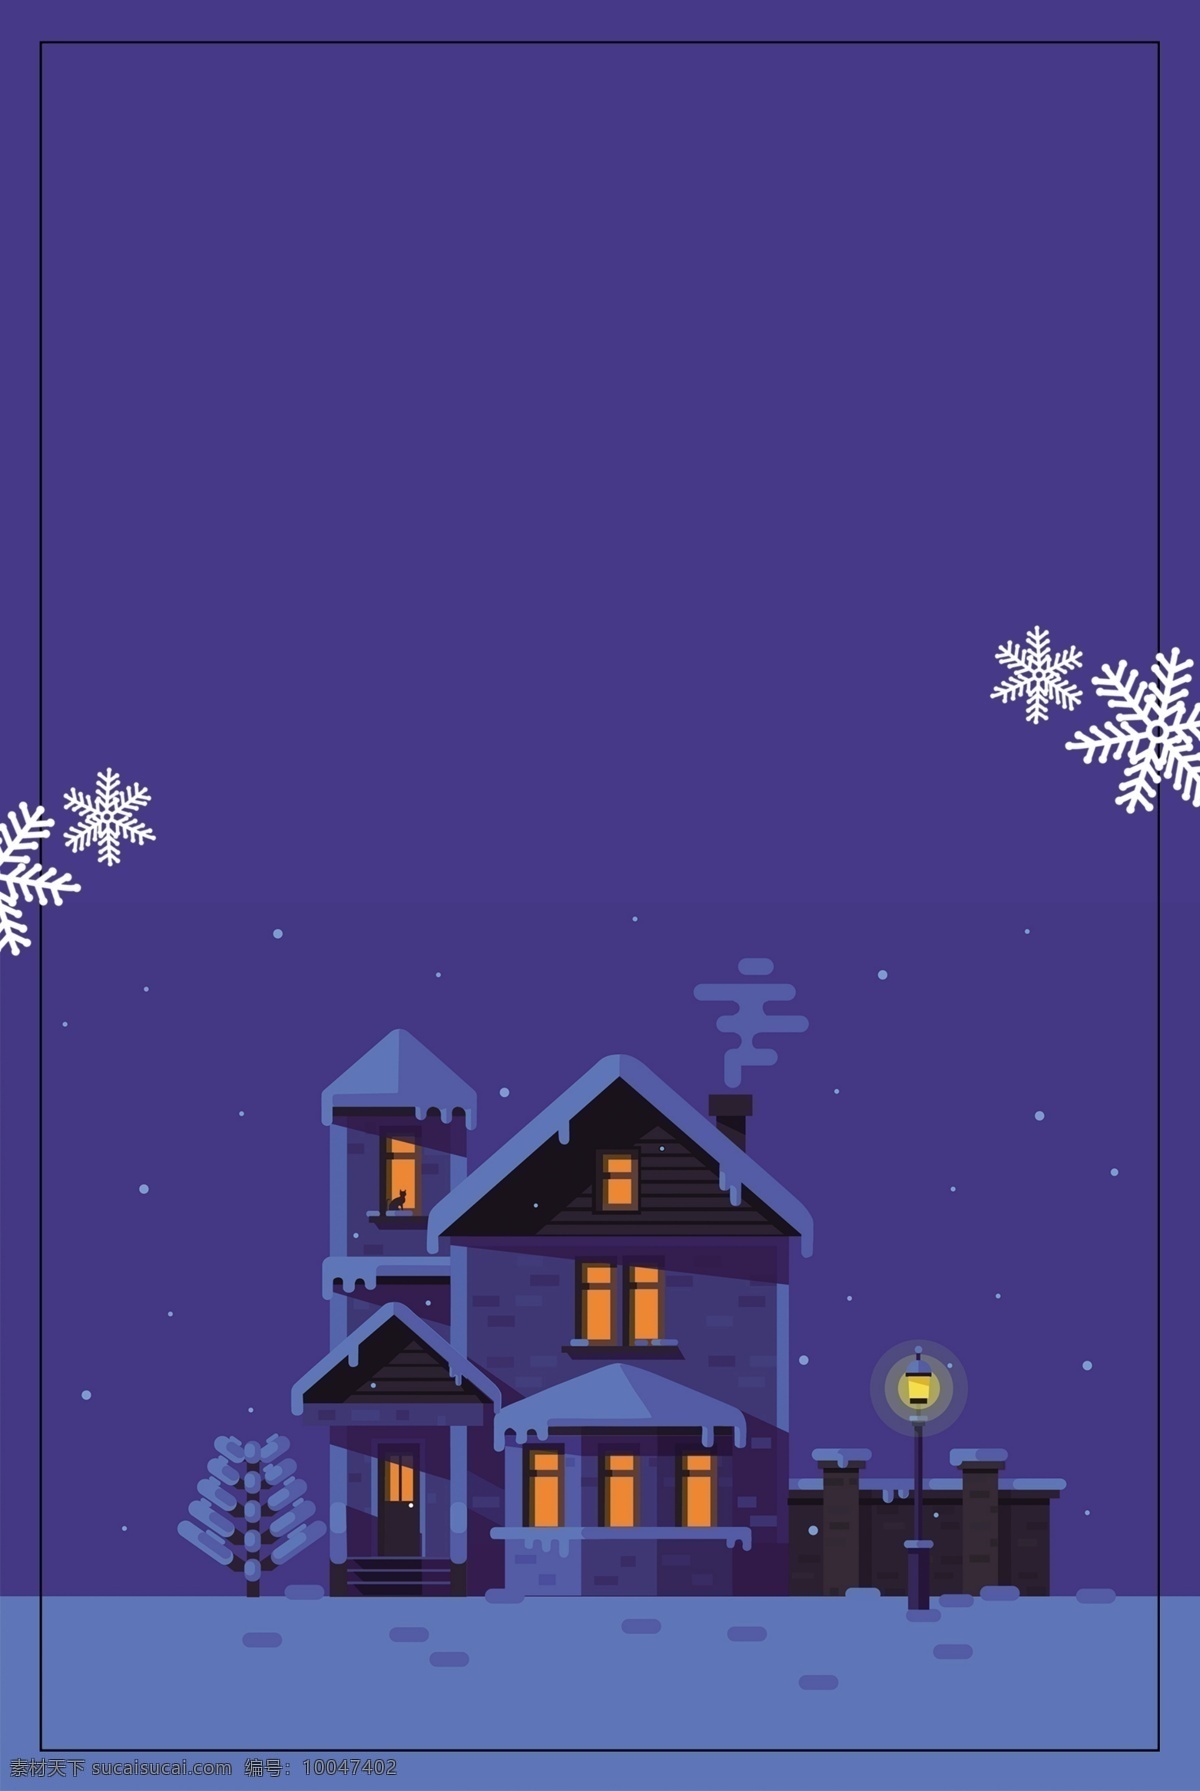 蓝色 冬季 雪花 城堡 背景 蓝色背景 别墅 建筑 冬季背景 冬天 下雪 冬至 大雪背景